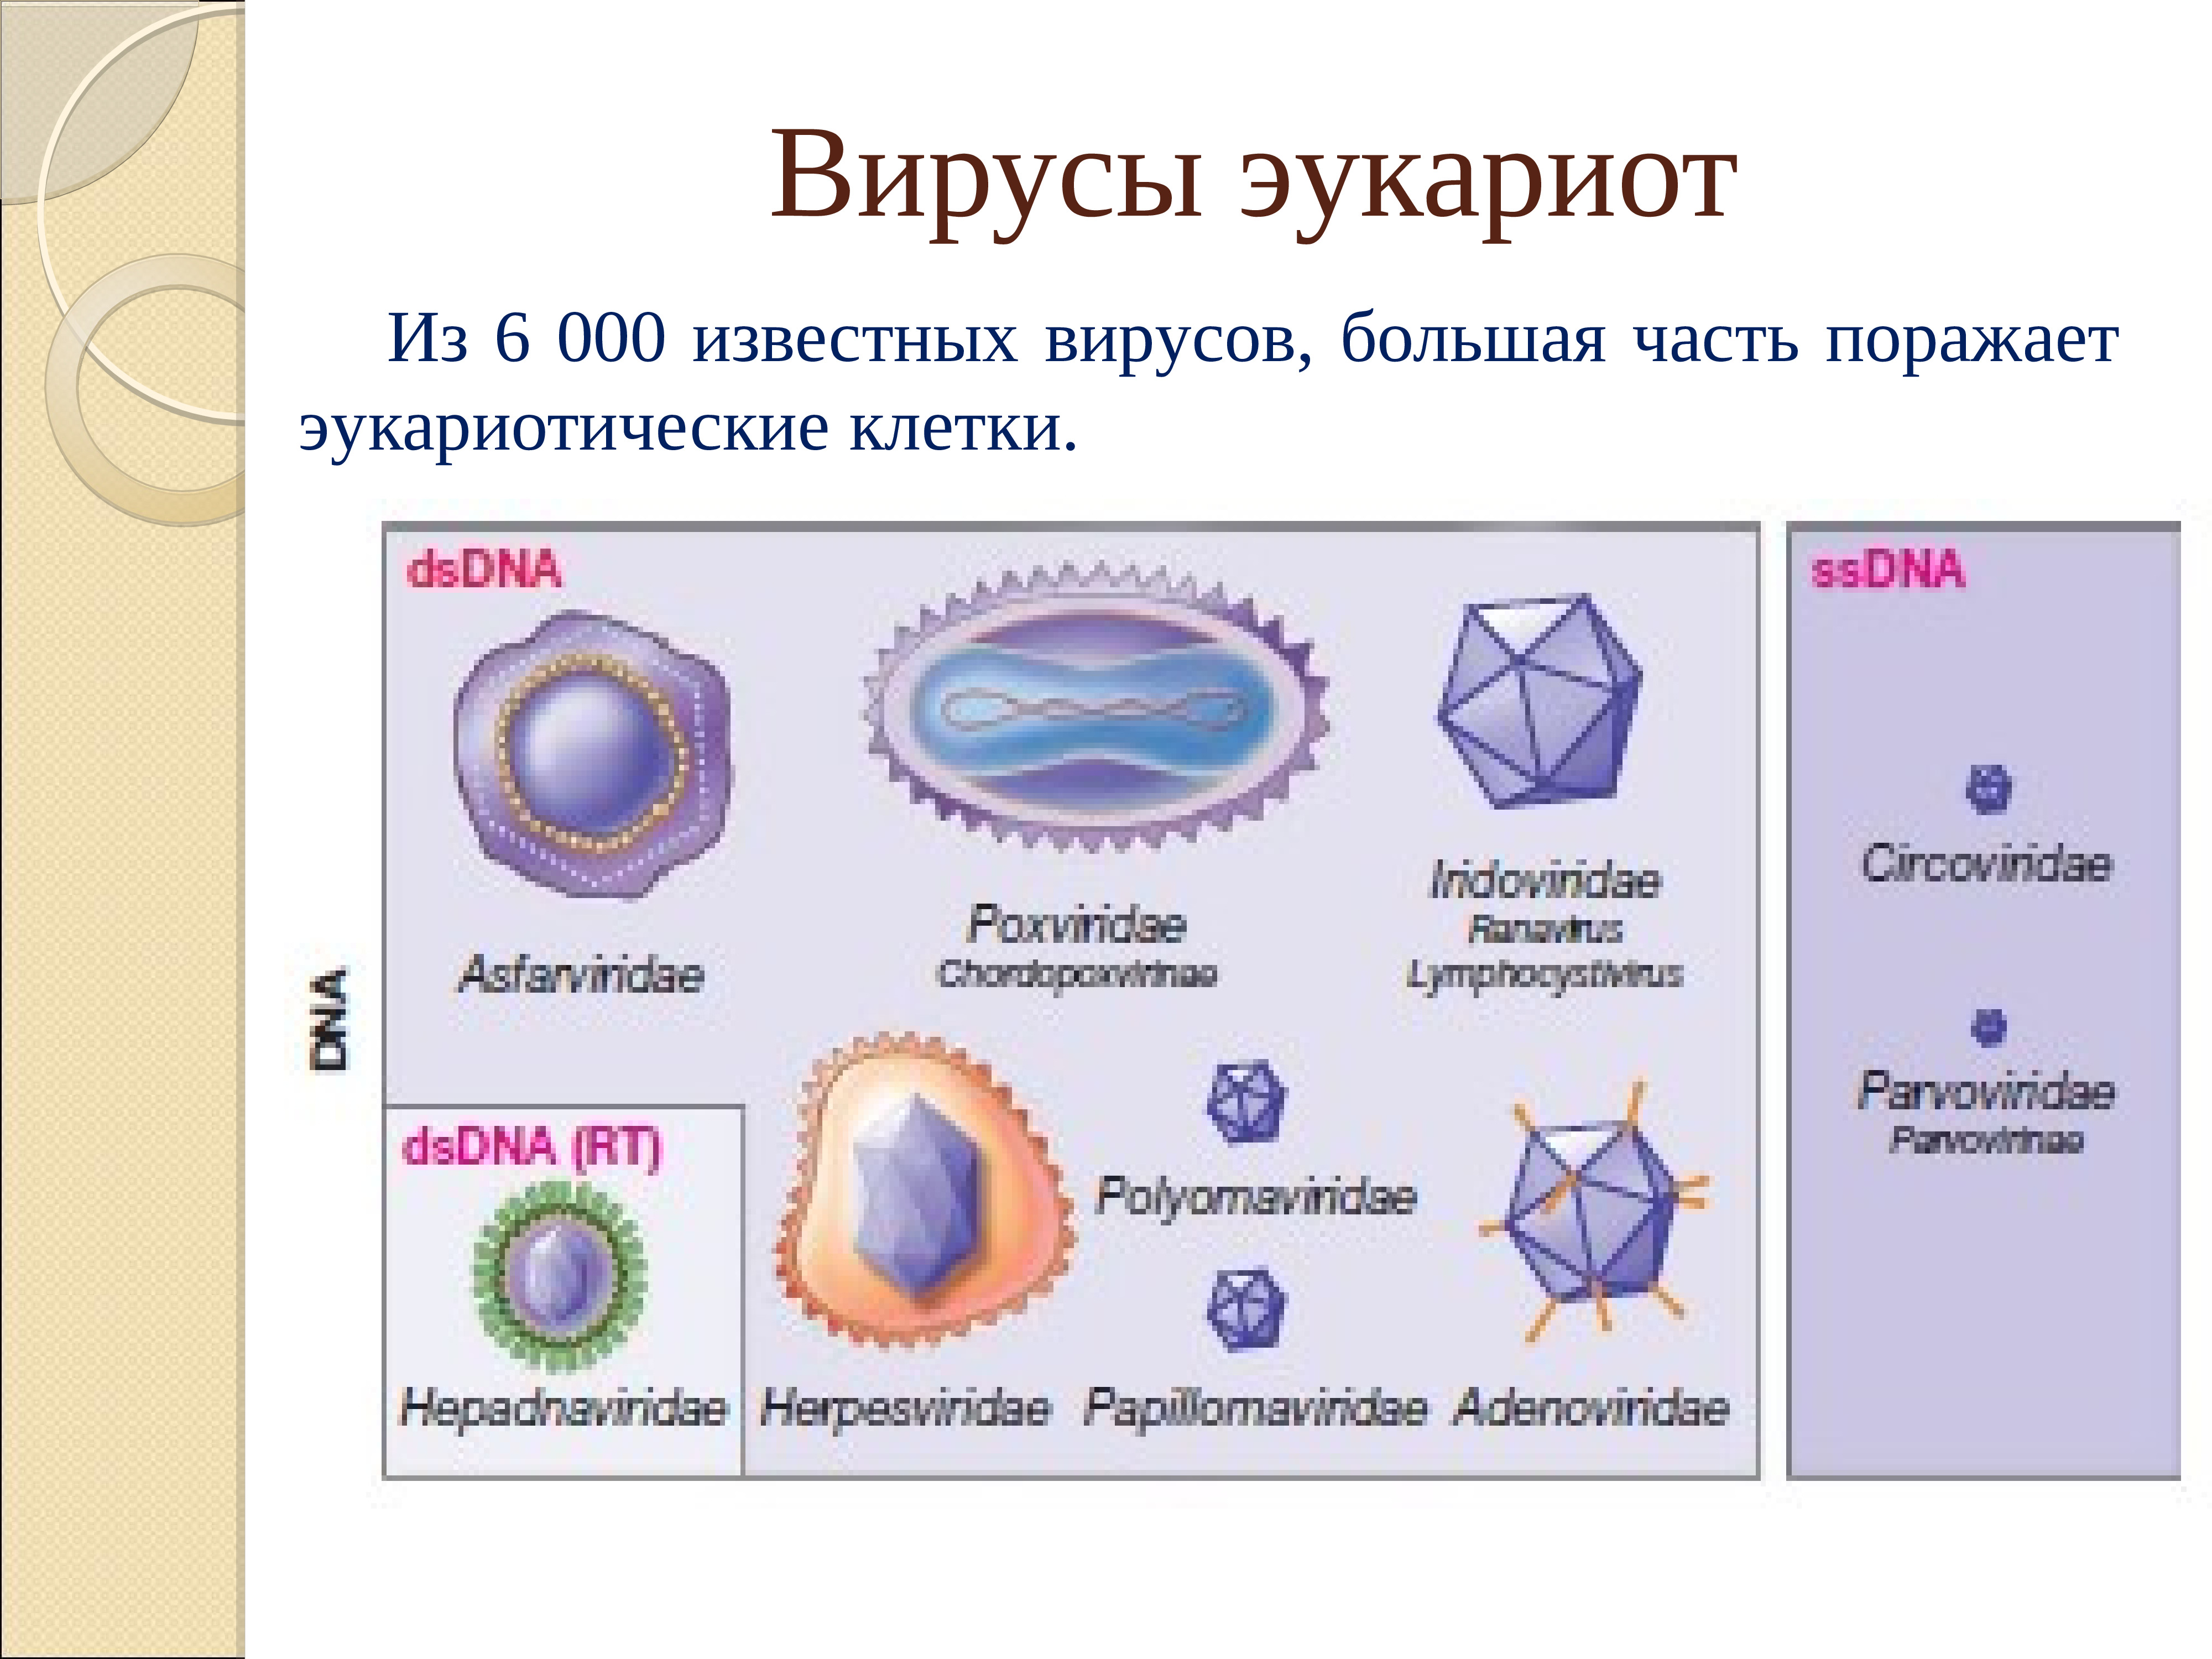 Вирус является формой жизни. Вирусы эукариоты. Прокариоты эукариоты вирусы. К эукариотам относятся вирусы. Вирусы эукариот или прокариот.